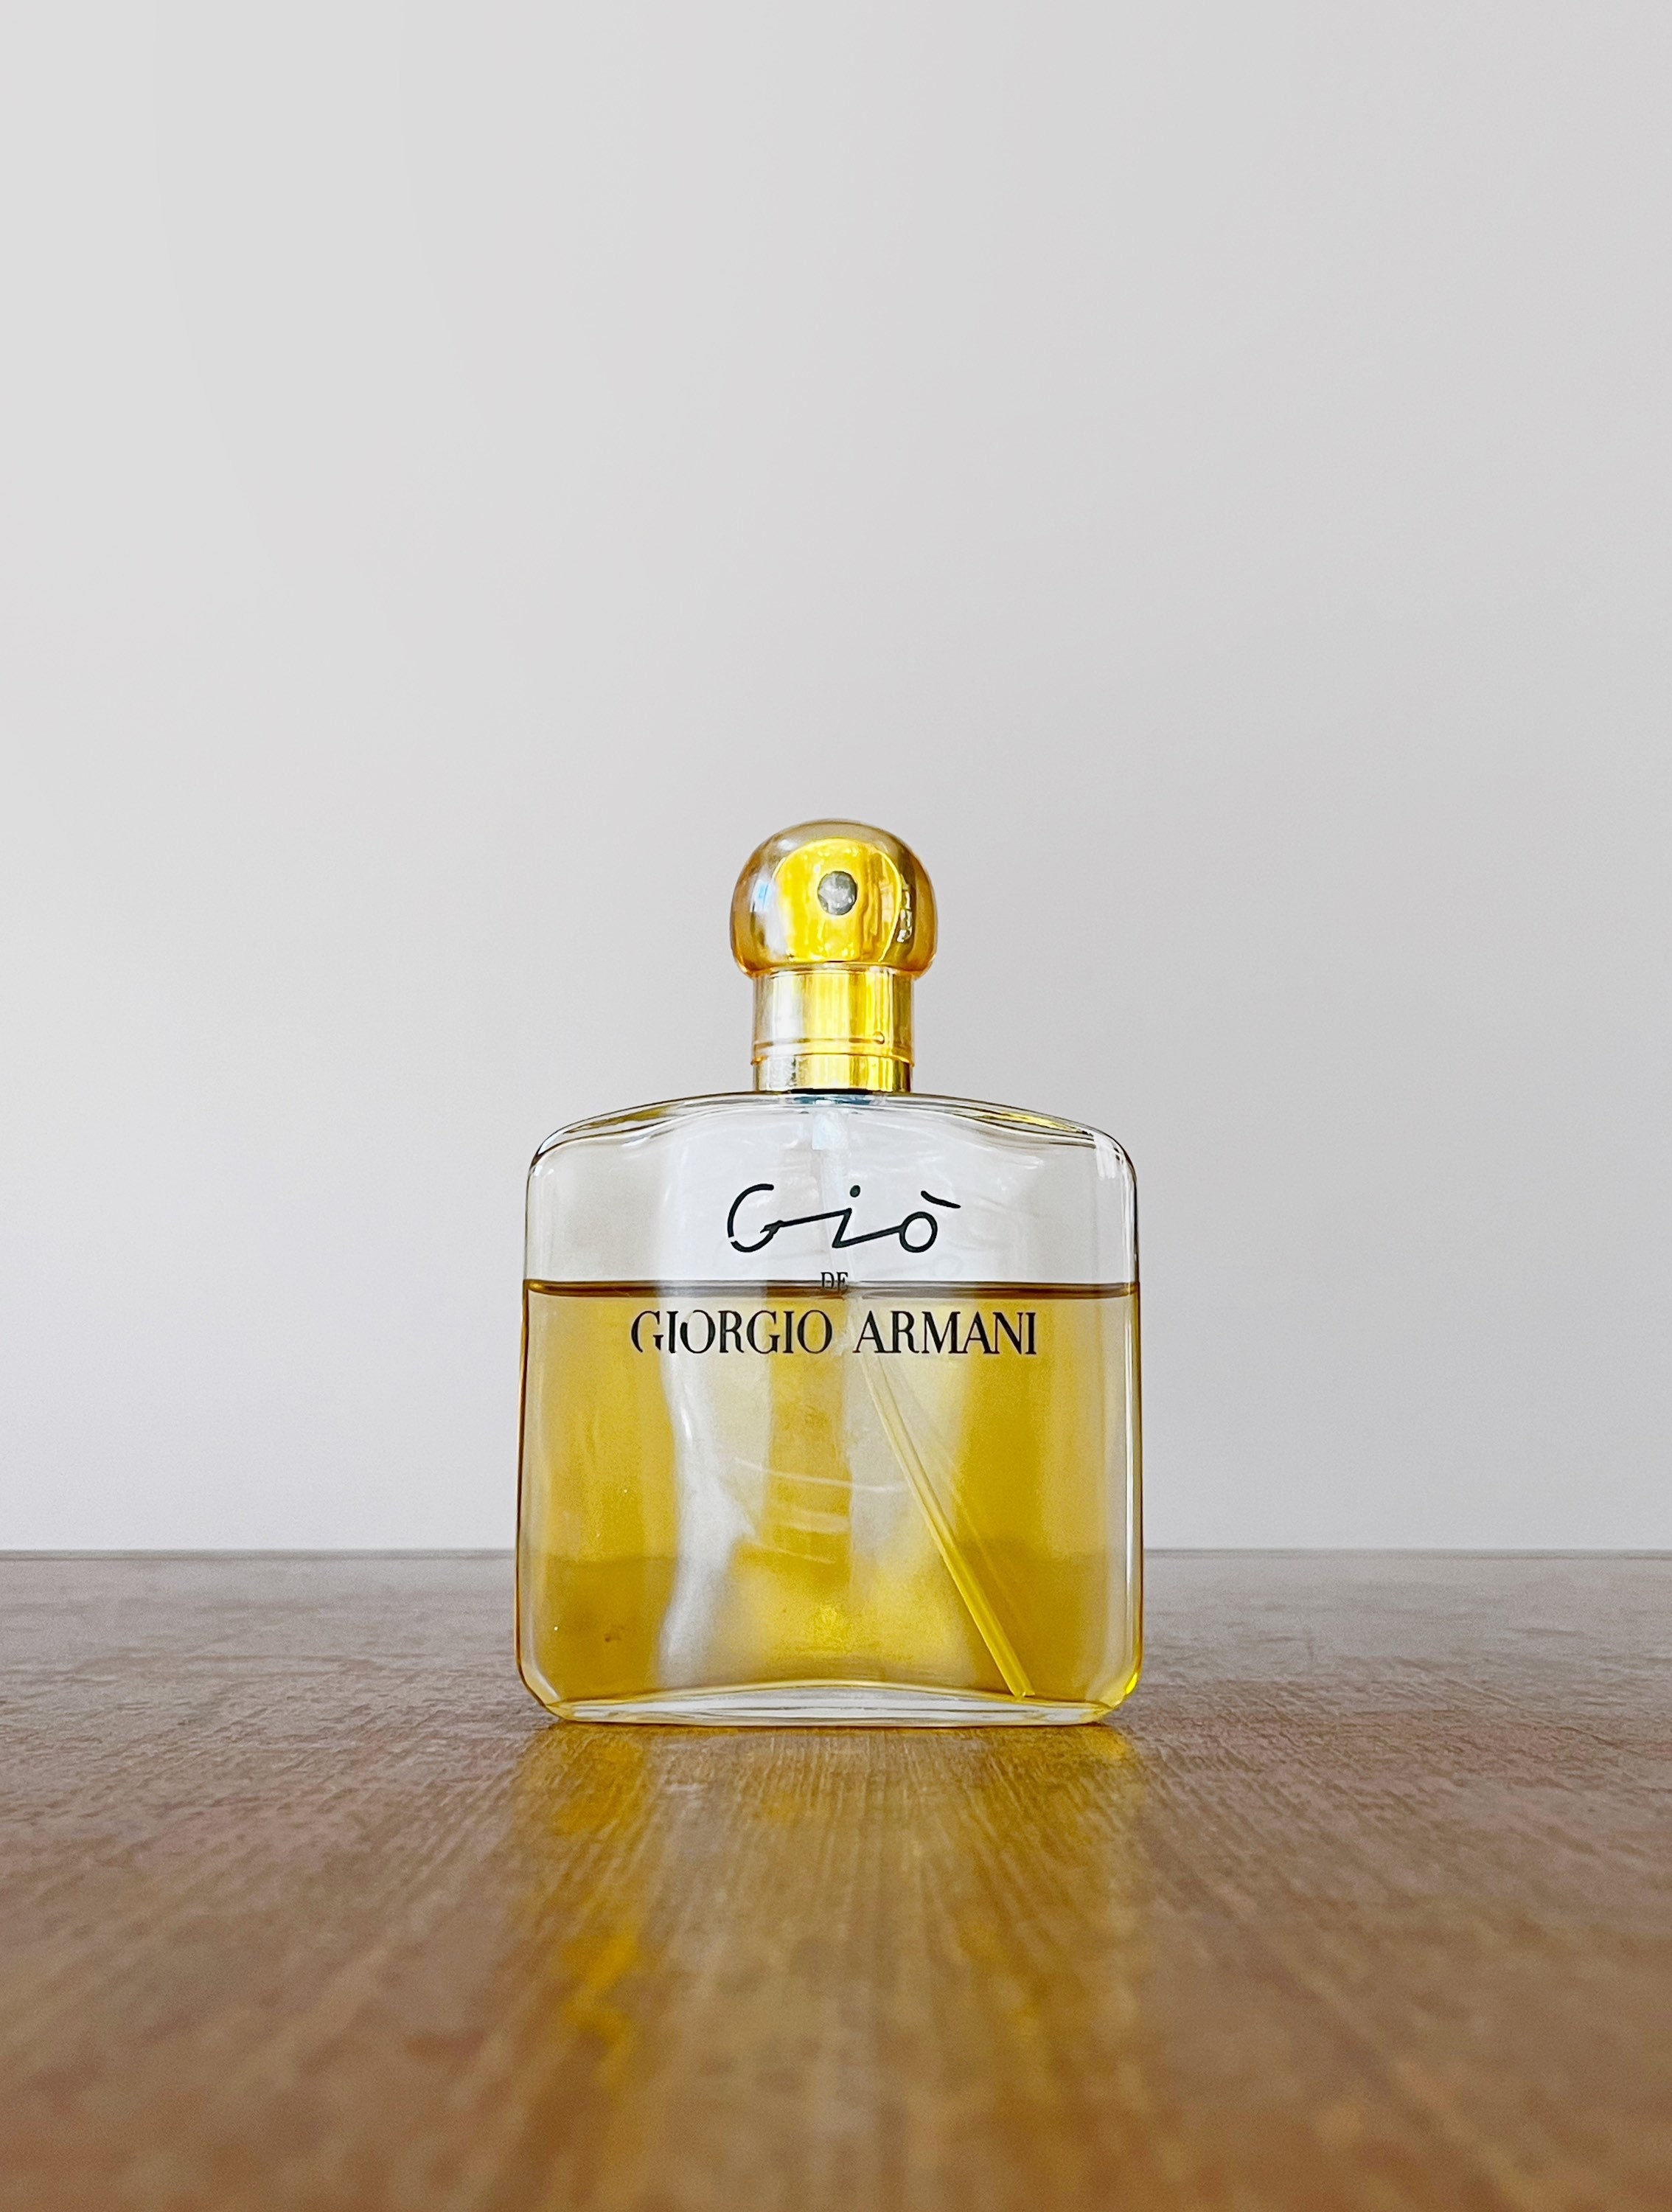 Vintage Gio De Giorgio Armani Paris Eau De Parfum French -